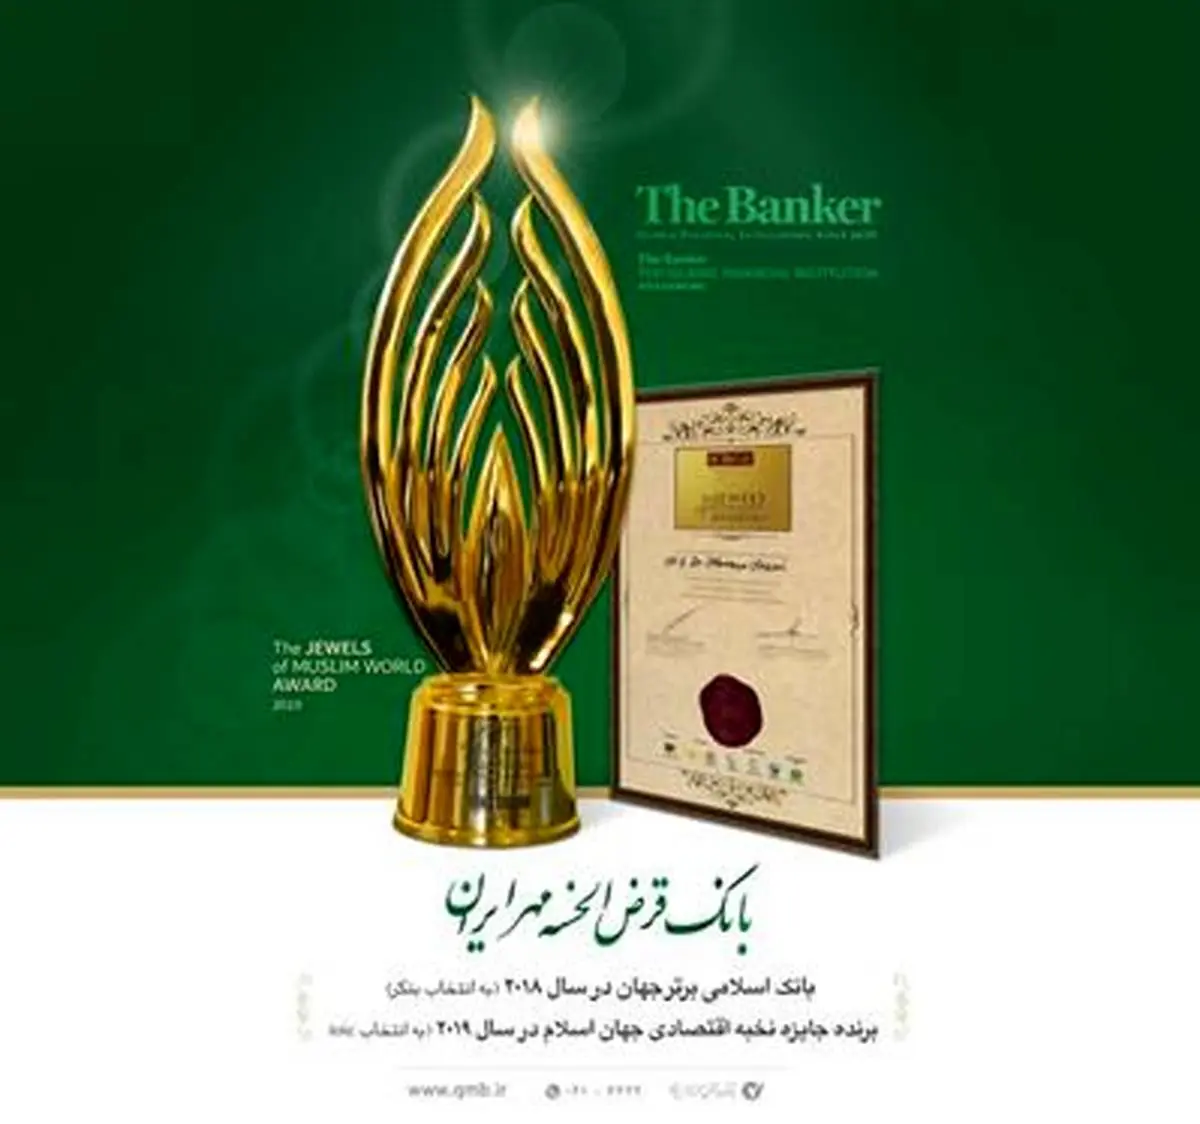 اعطای جایزه نخبه اقتصادی جهان اسلام به مدیرعامل بانک قرض الحسنه مهر ایران

